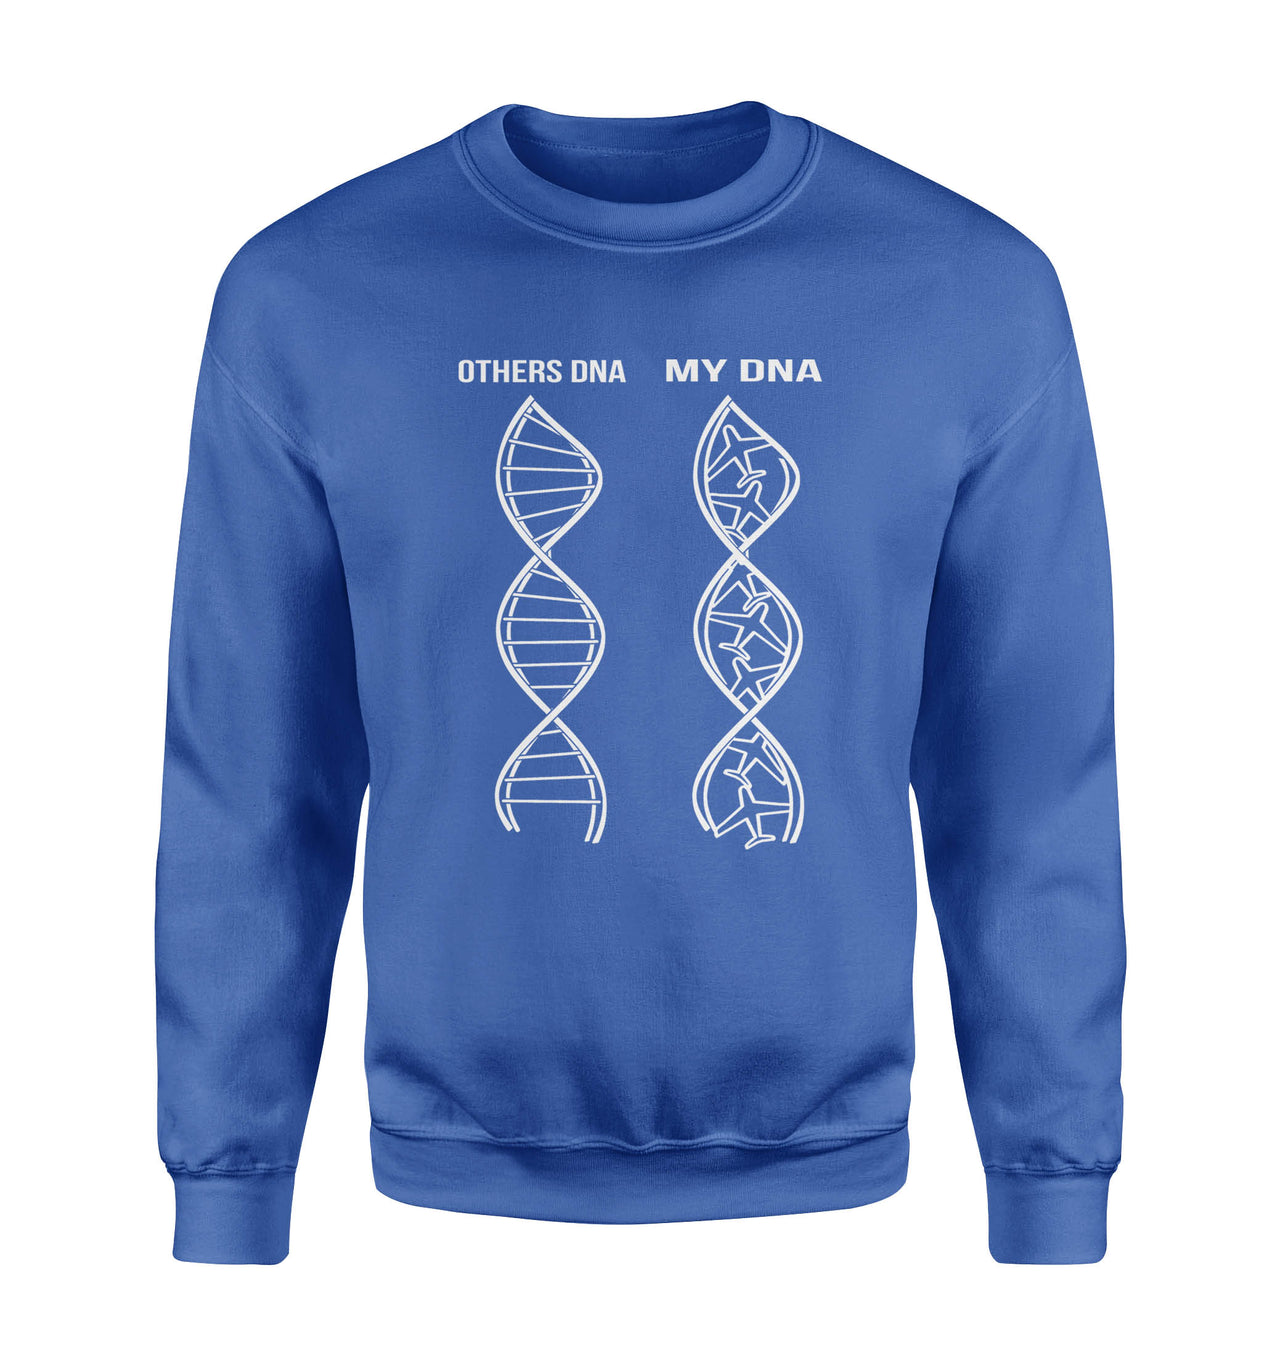 Aviation DNA Designed Sweatshirts